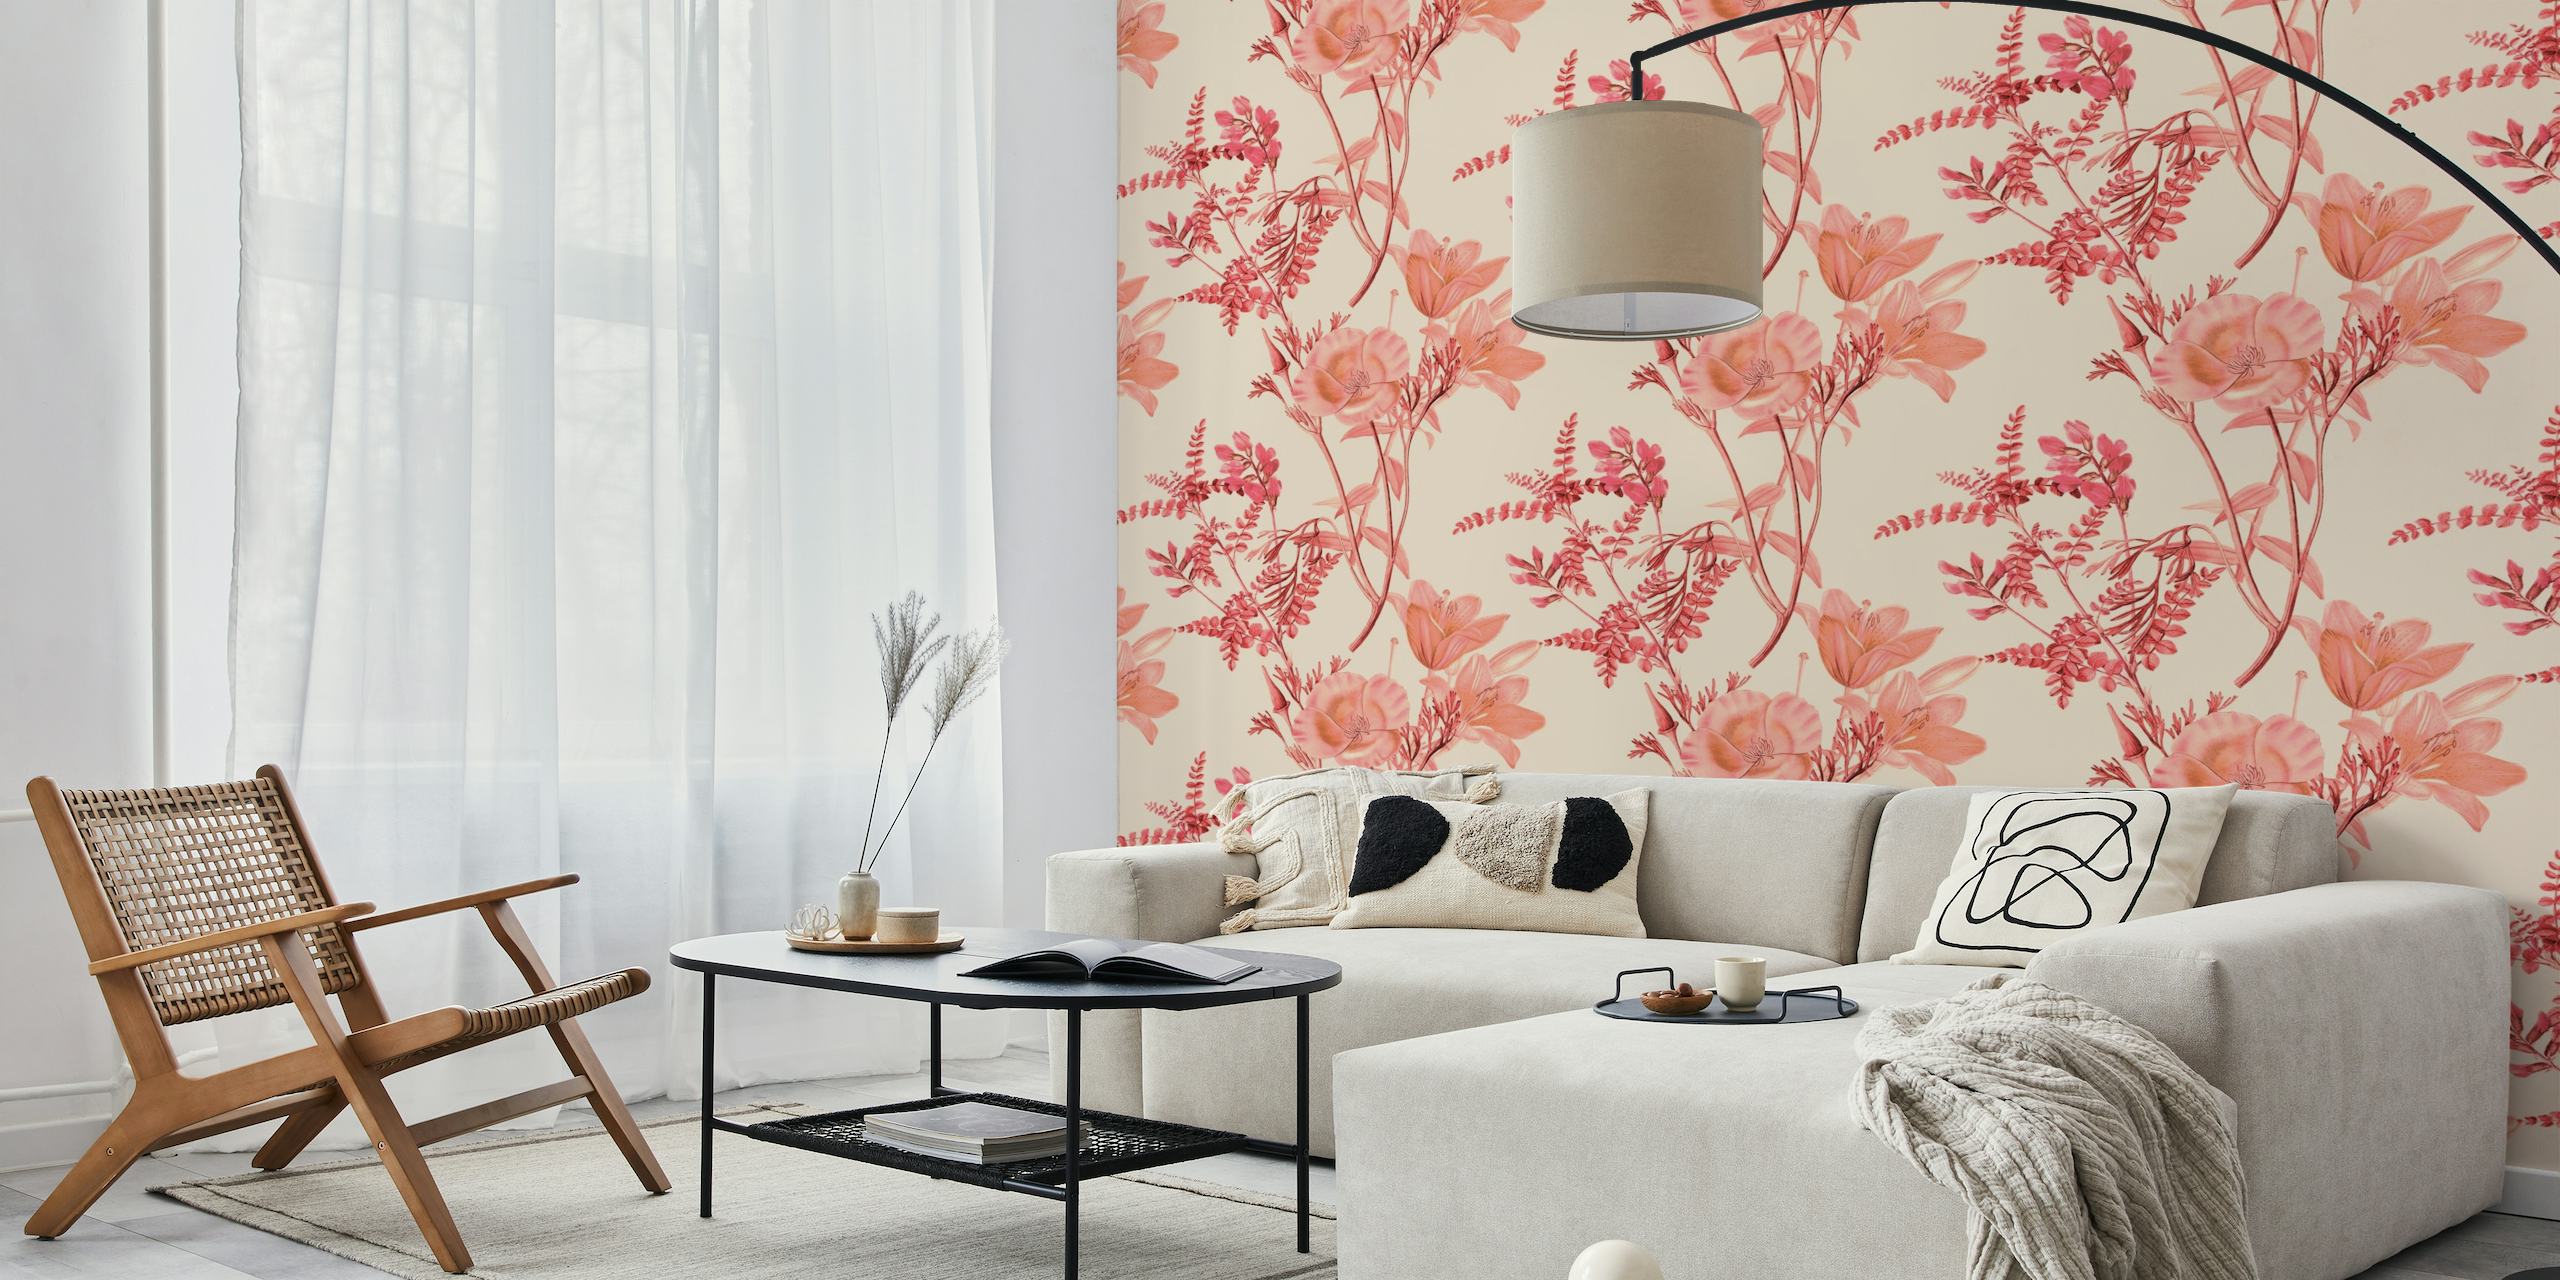 Peach Blush Flowers -seinämaalaus pehmeillä persikan sävyisillä kukinnoilla ja rehevillä lehdillä vaimealla taustalla